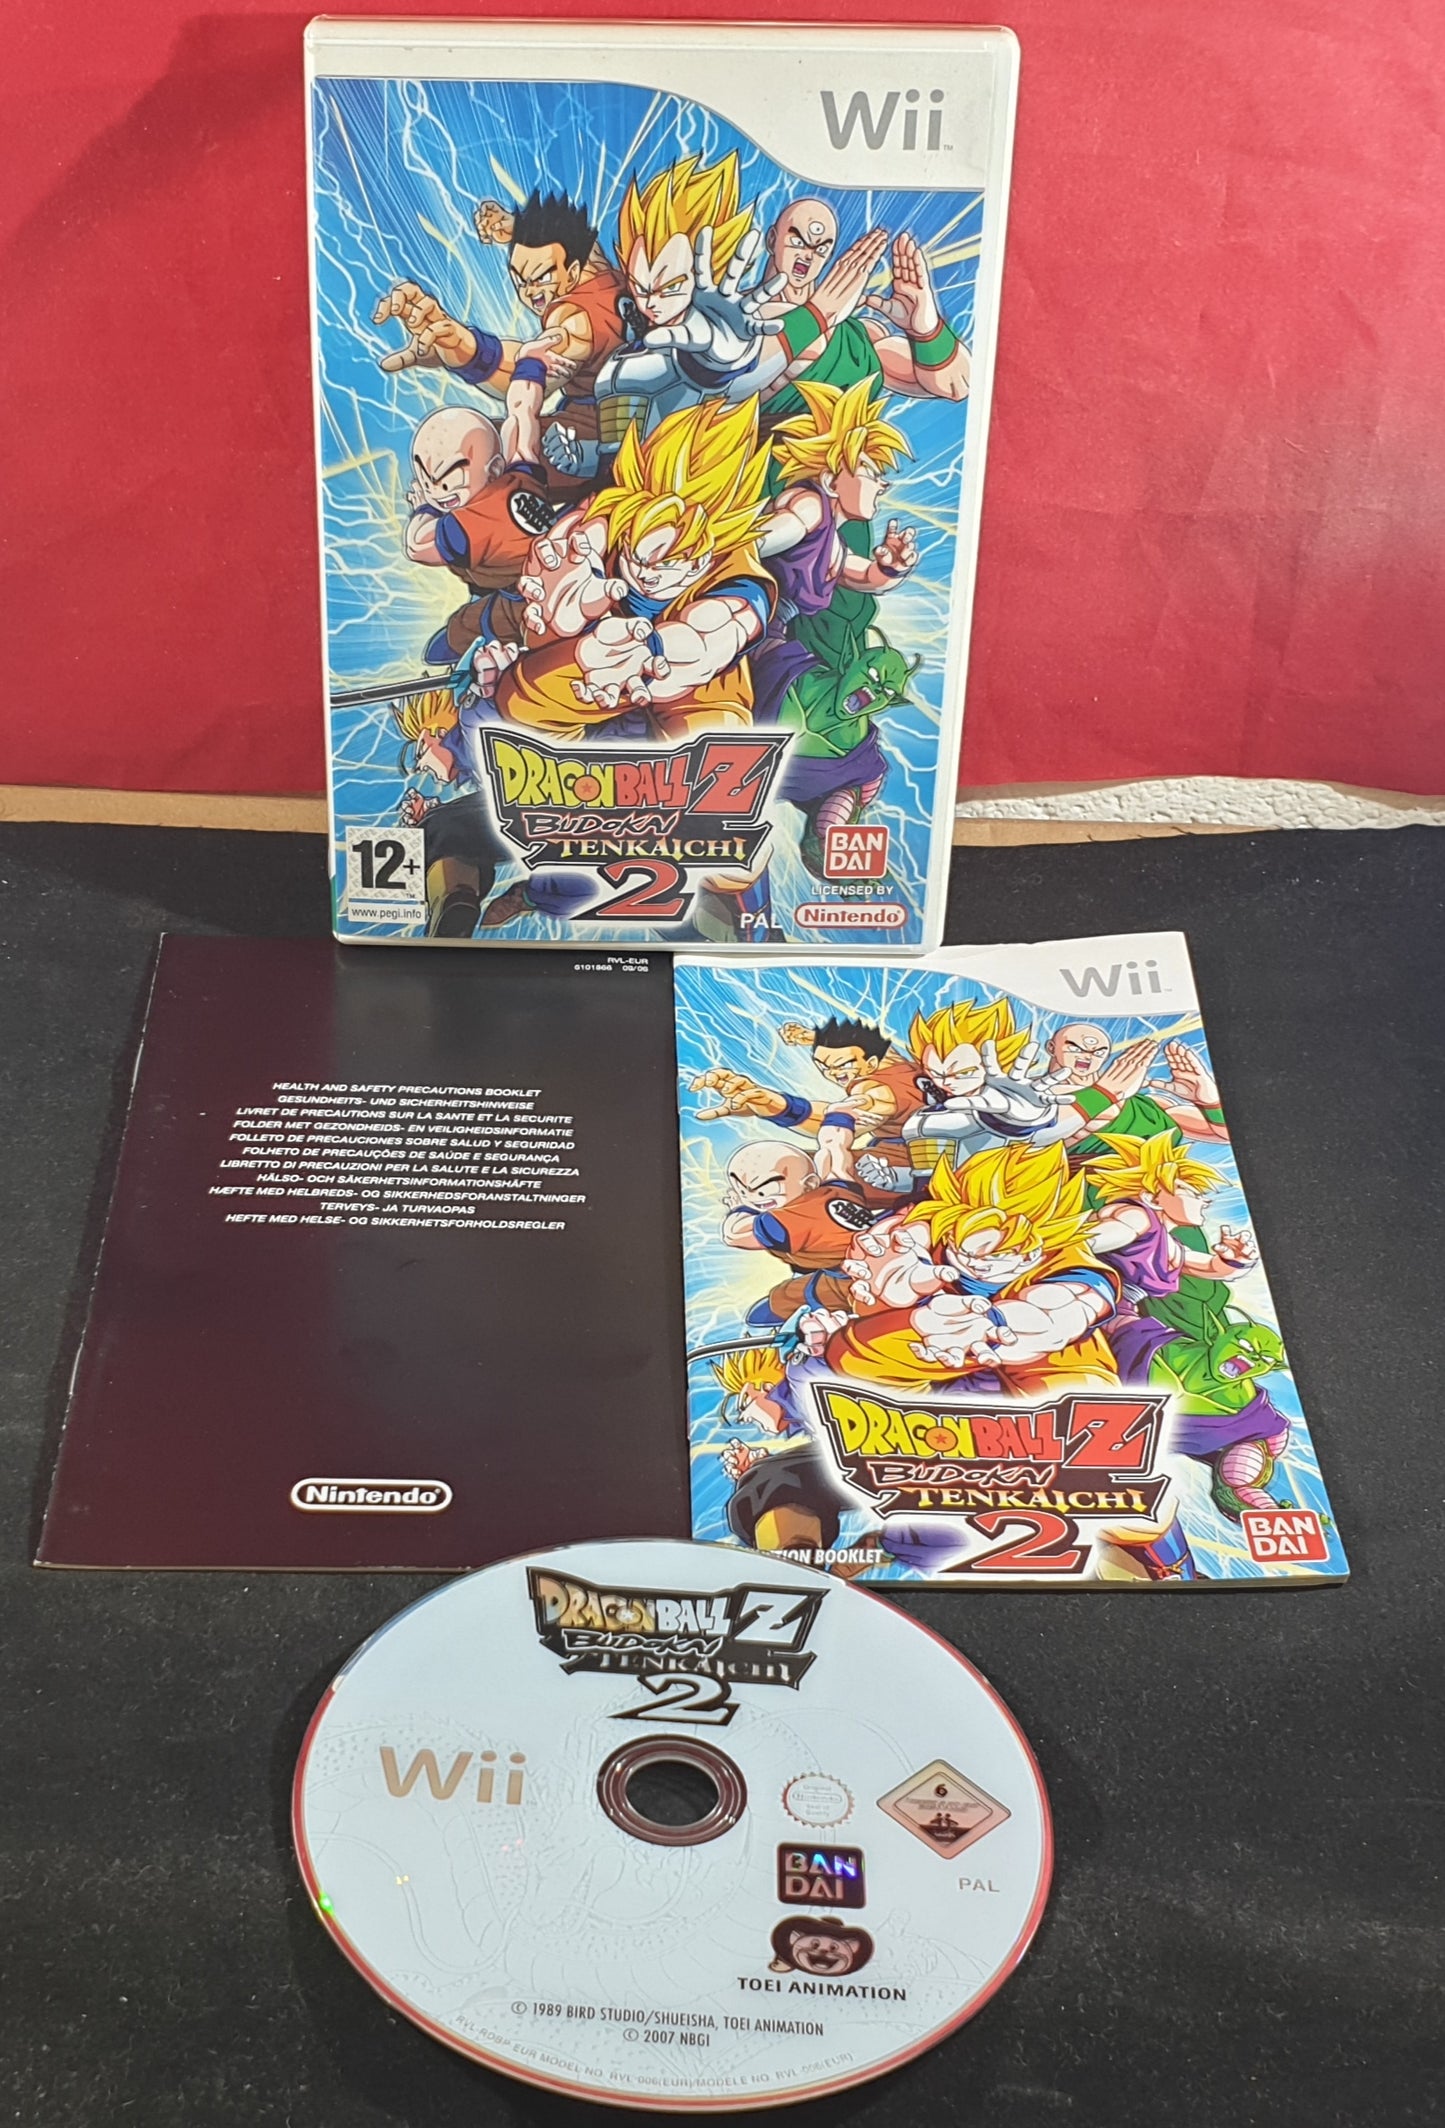 Dragon Ball Z Budokai Tenaichi 2 Nintendo Wii Game